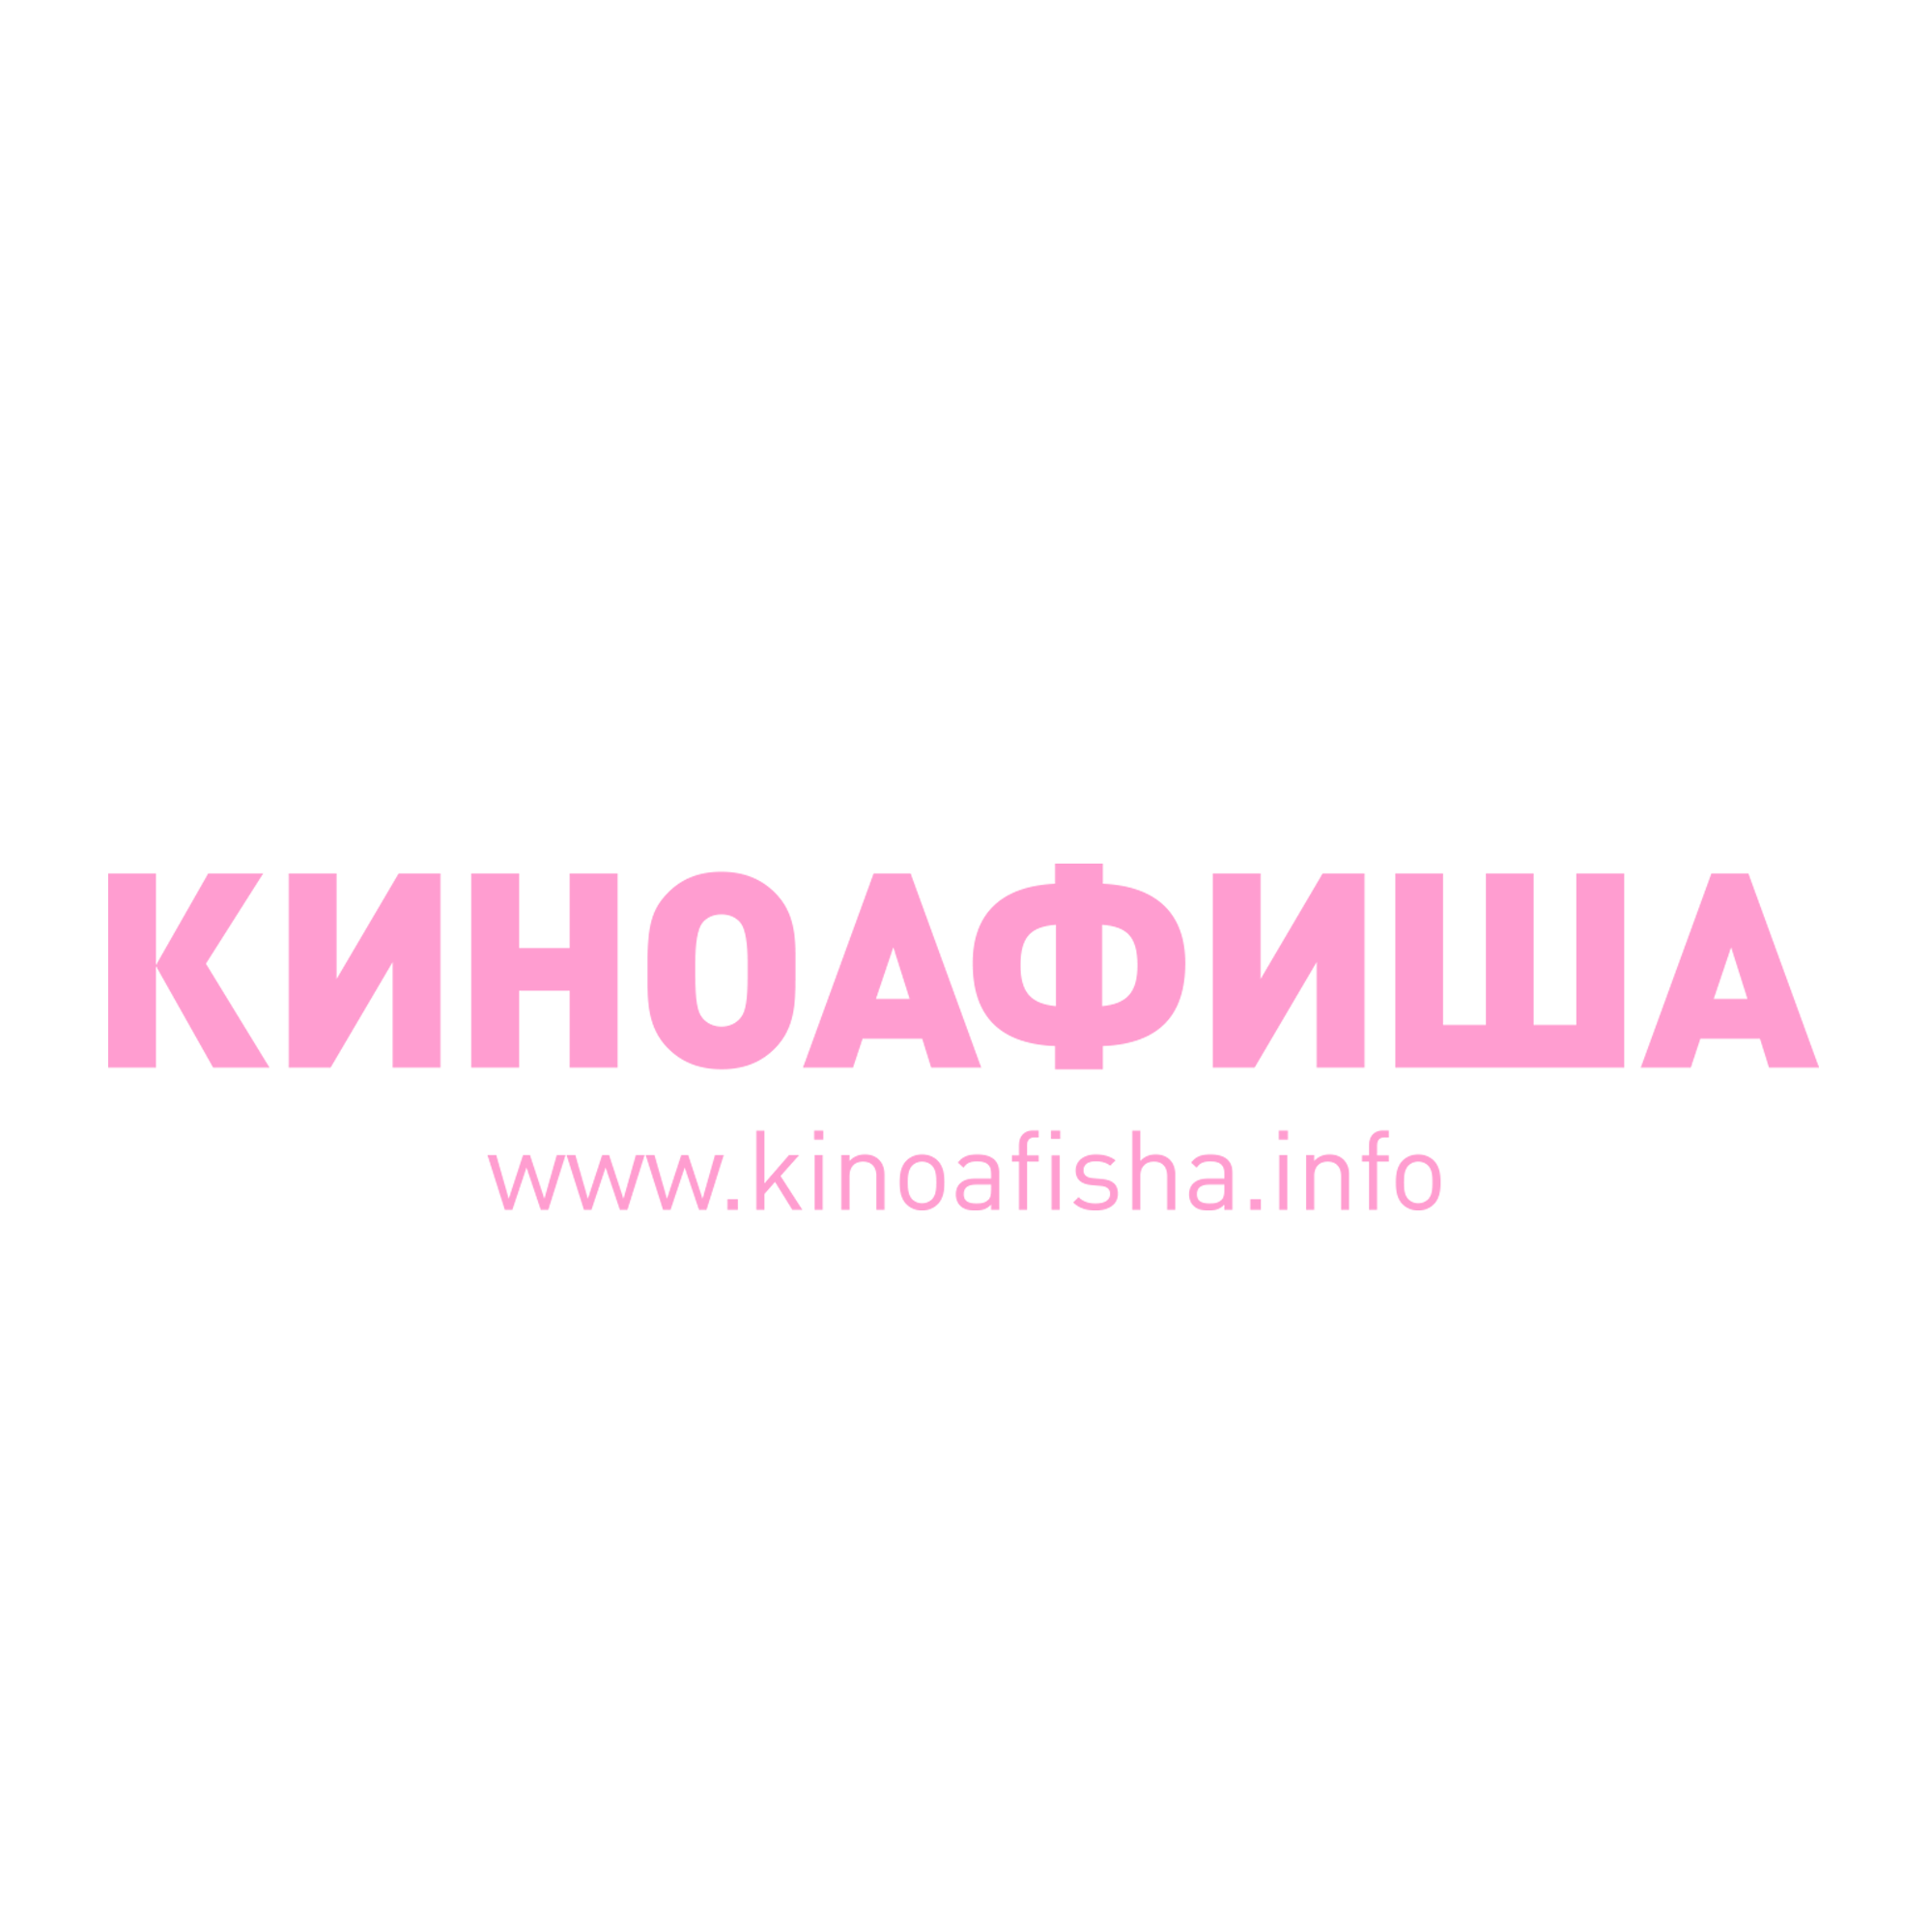 Kinoafisha